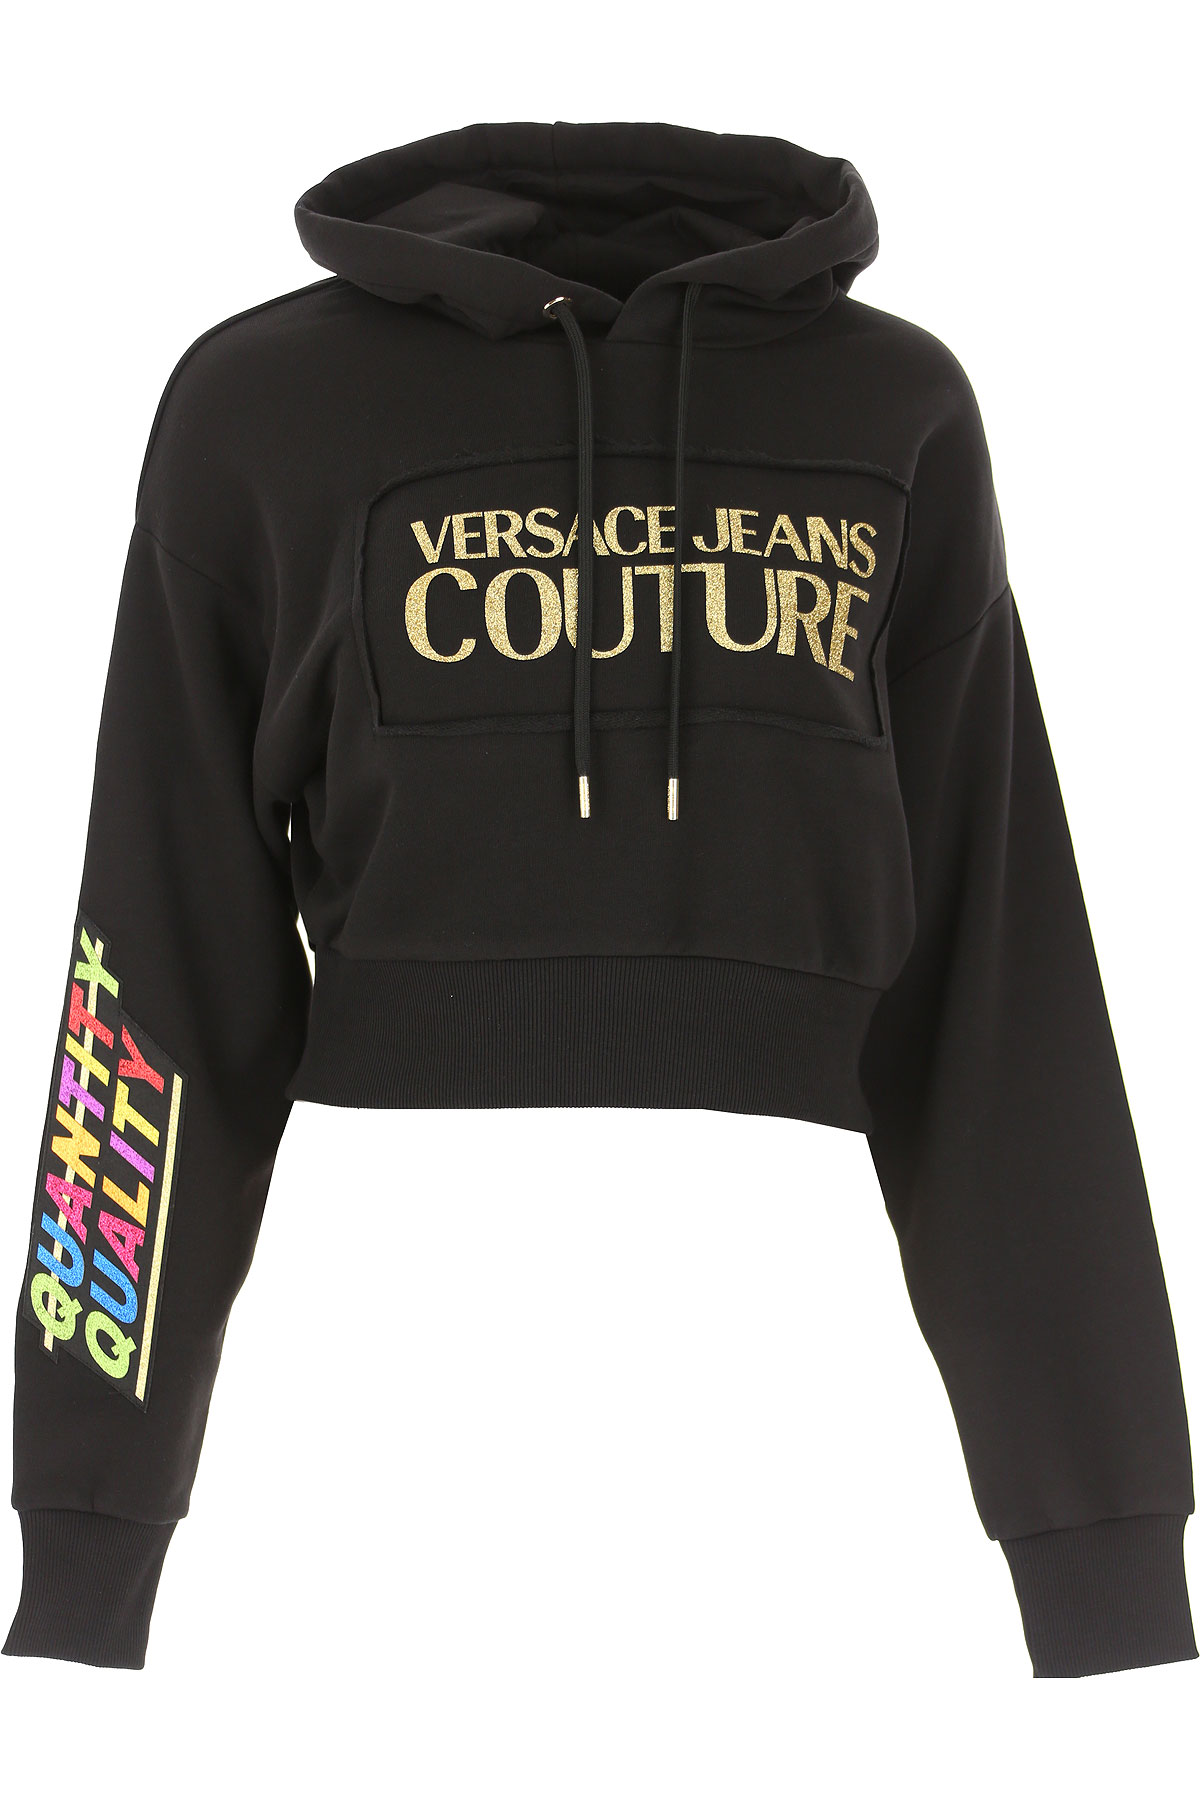 Versace Jeans Couture Sweatshirt für Damen, Kapuzenpulli, Hoodie, Sweats Günstig im Sale, Schwarz, Baumwolle, 2017, 38 40 44 M